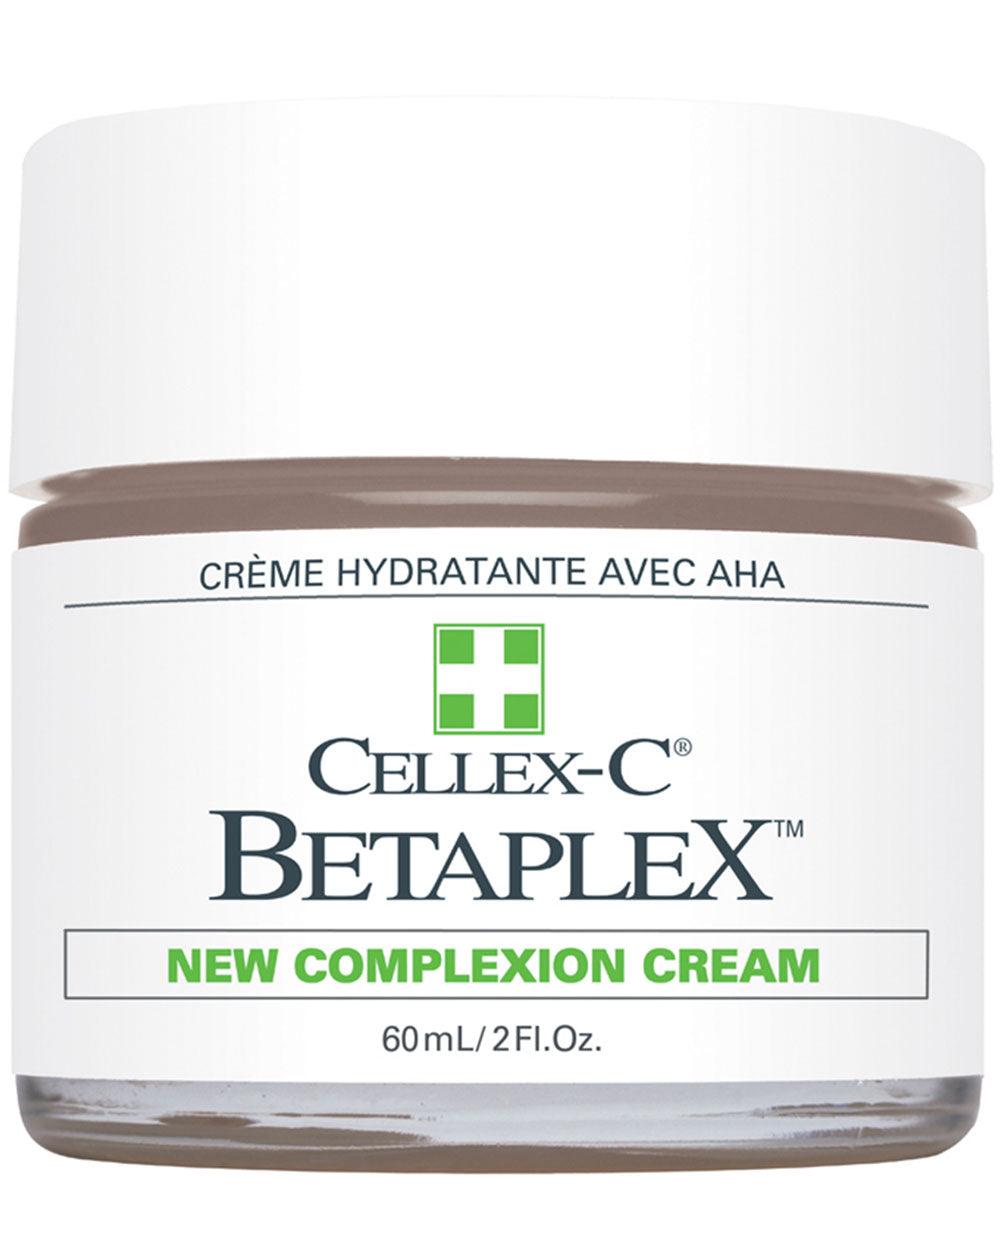 Betaplex New Complexion Cream